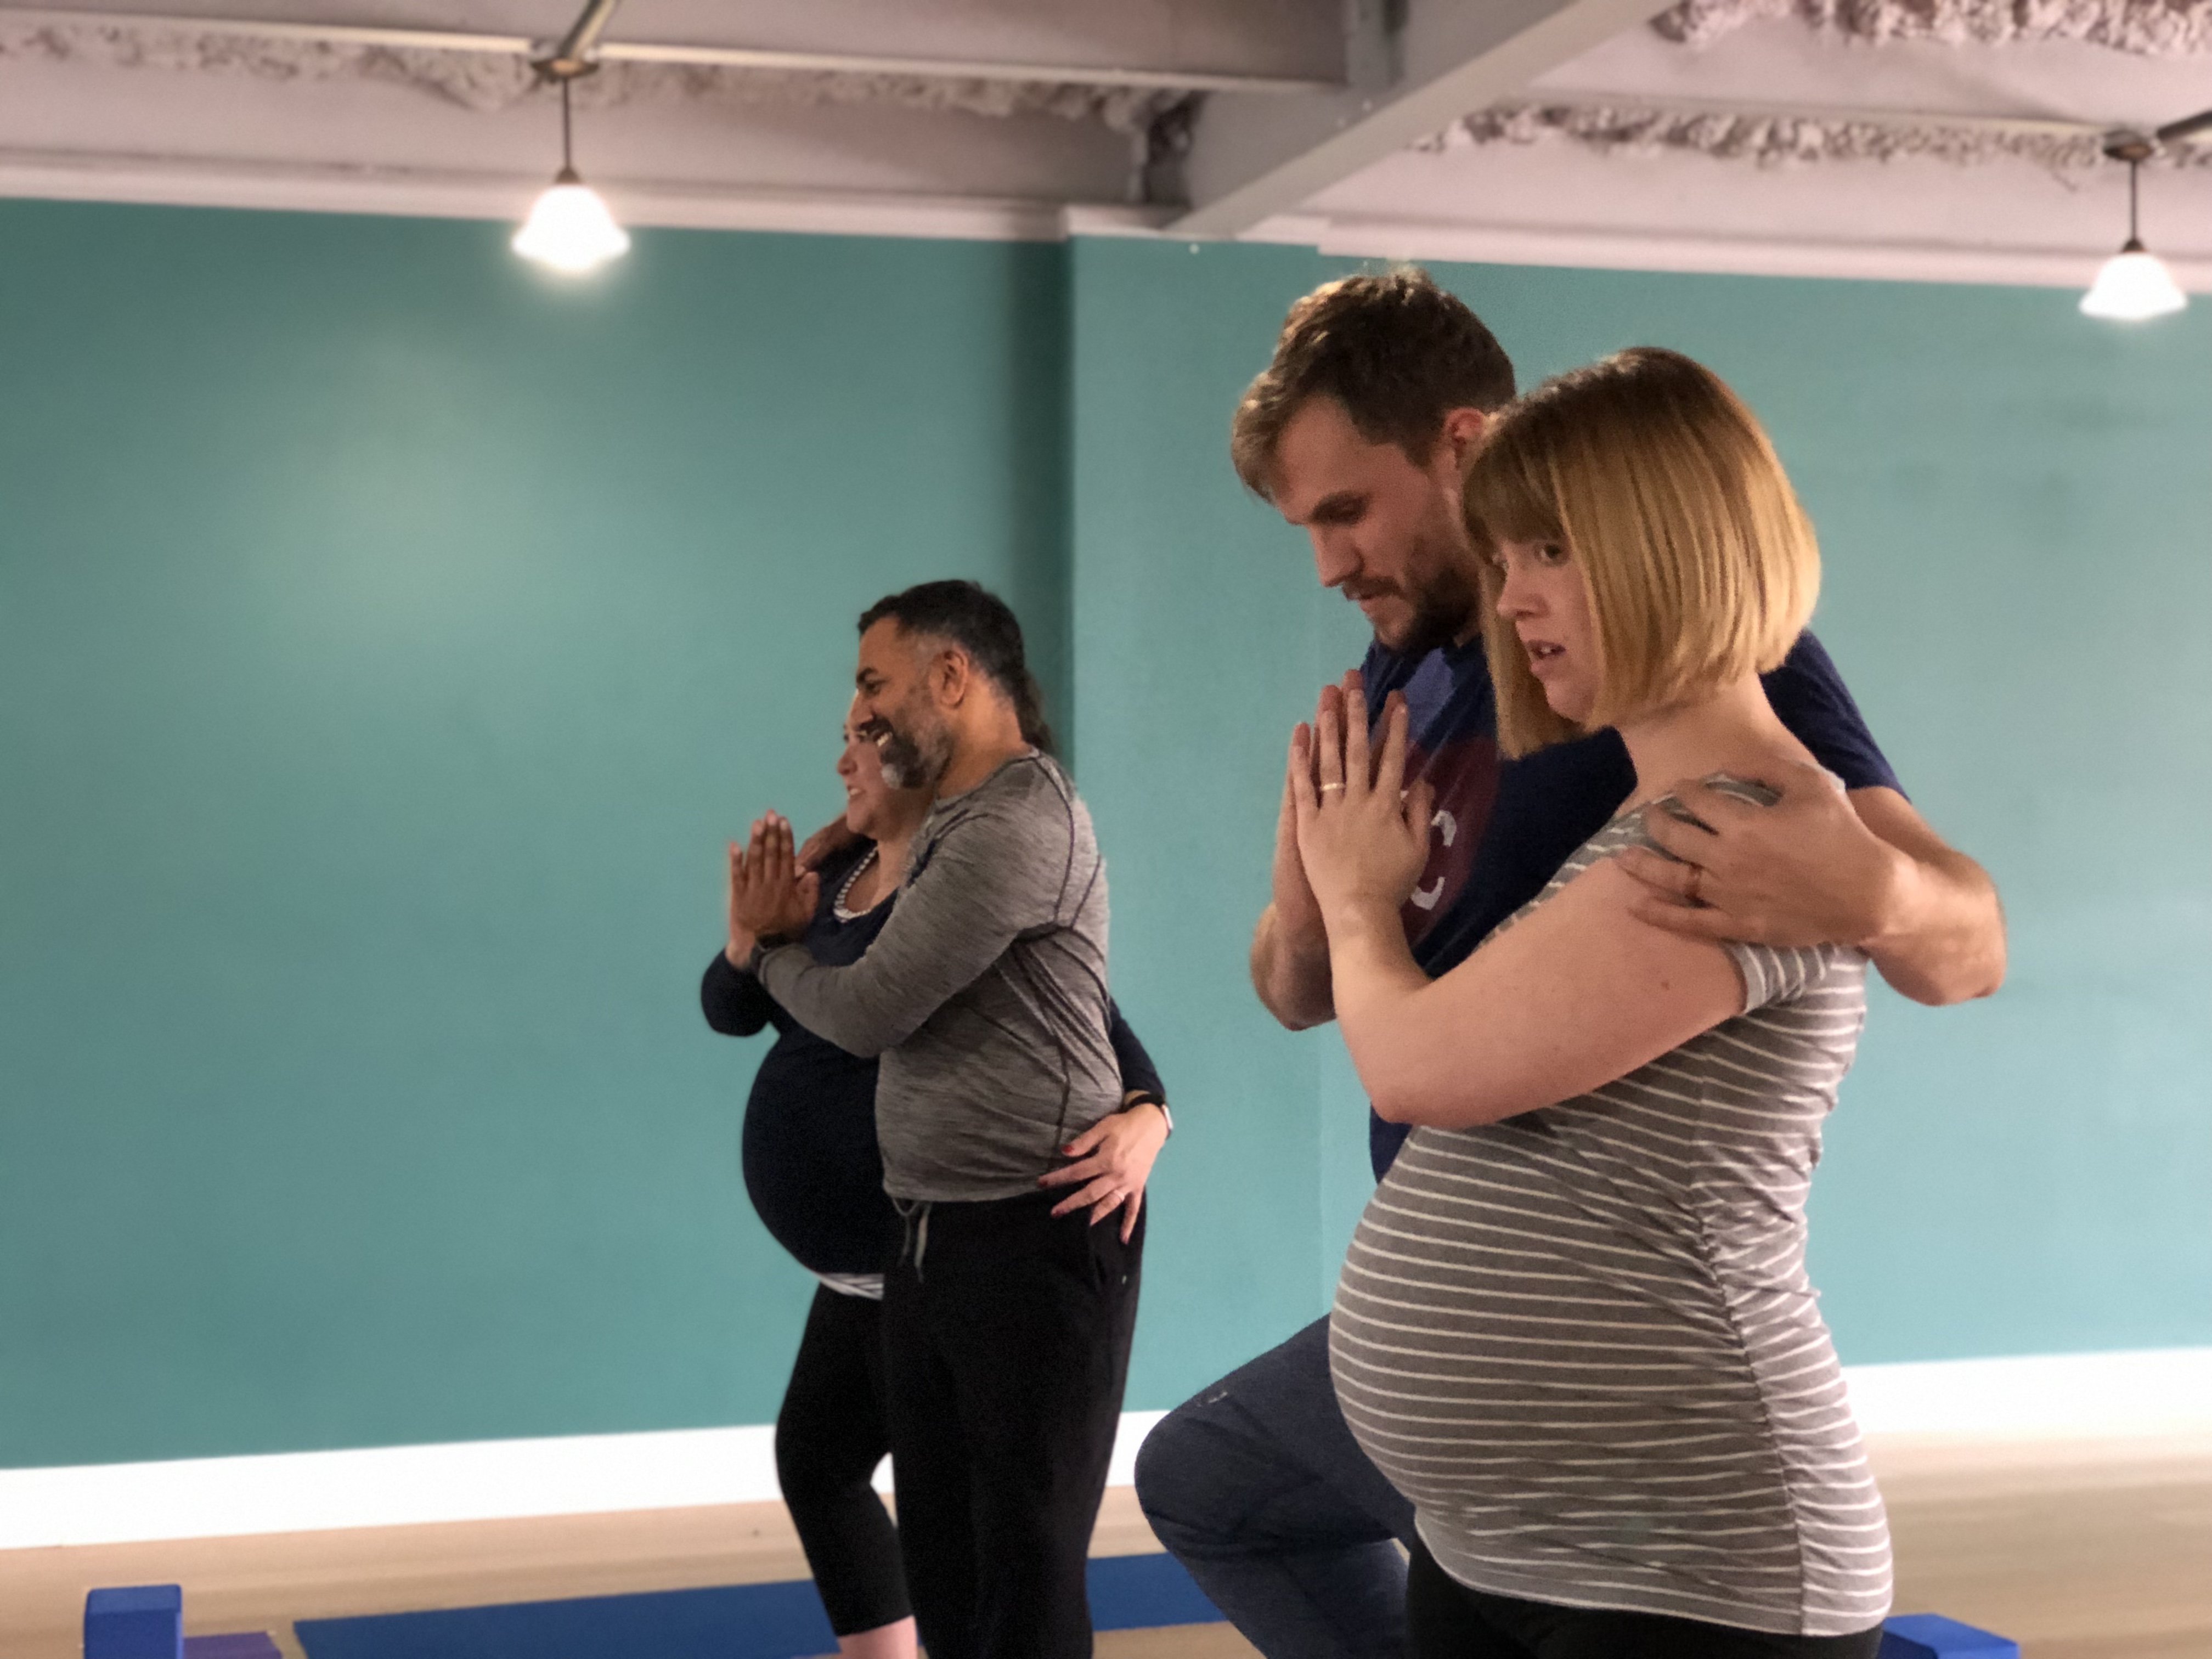 Prenatal Partner Yoga Workshop — Om Births